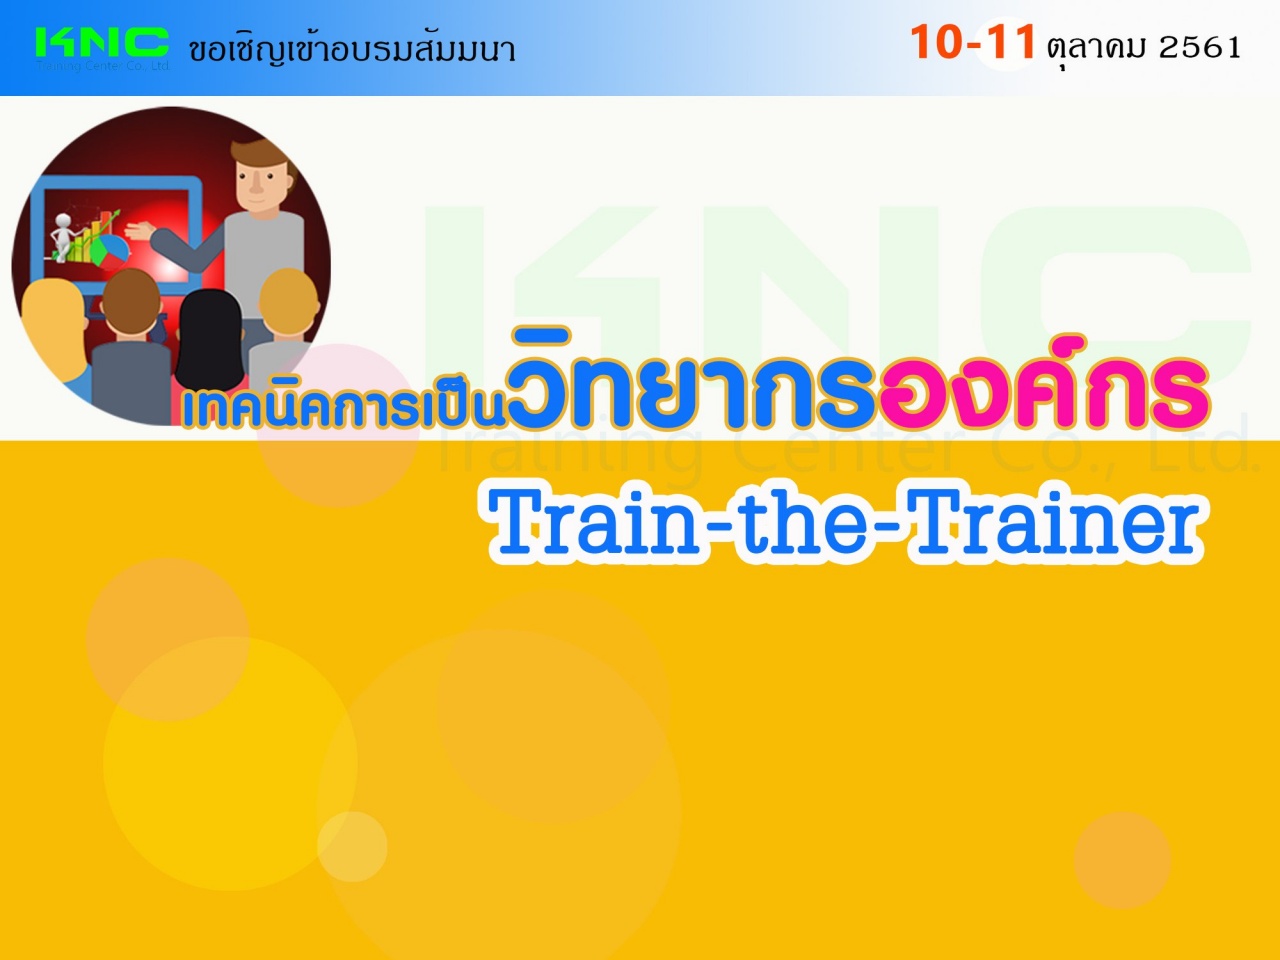 เทคนิคการเป็นวิทยากรองค์กร : Train-the-Trainer